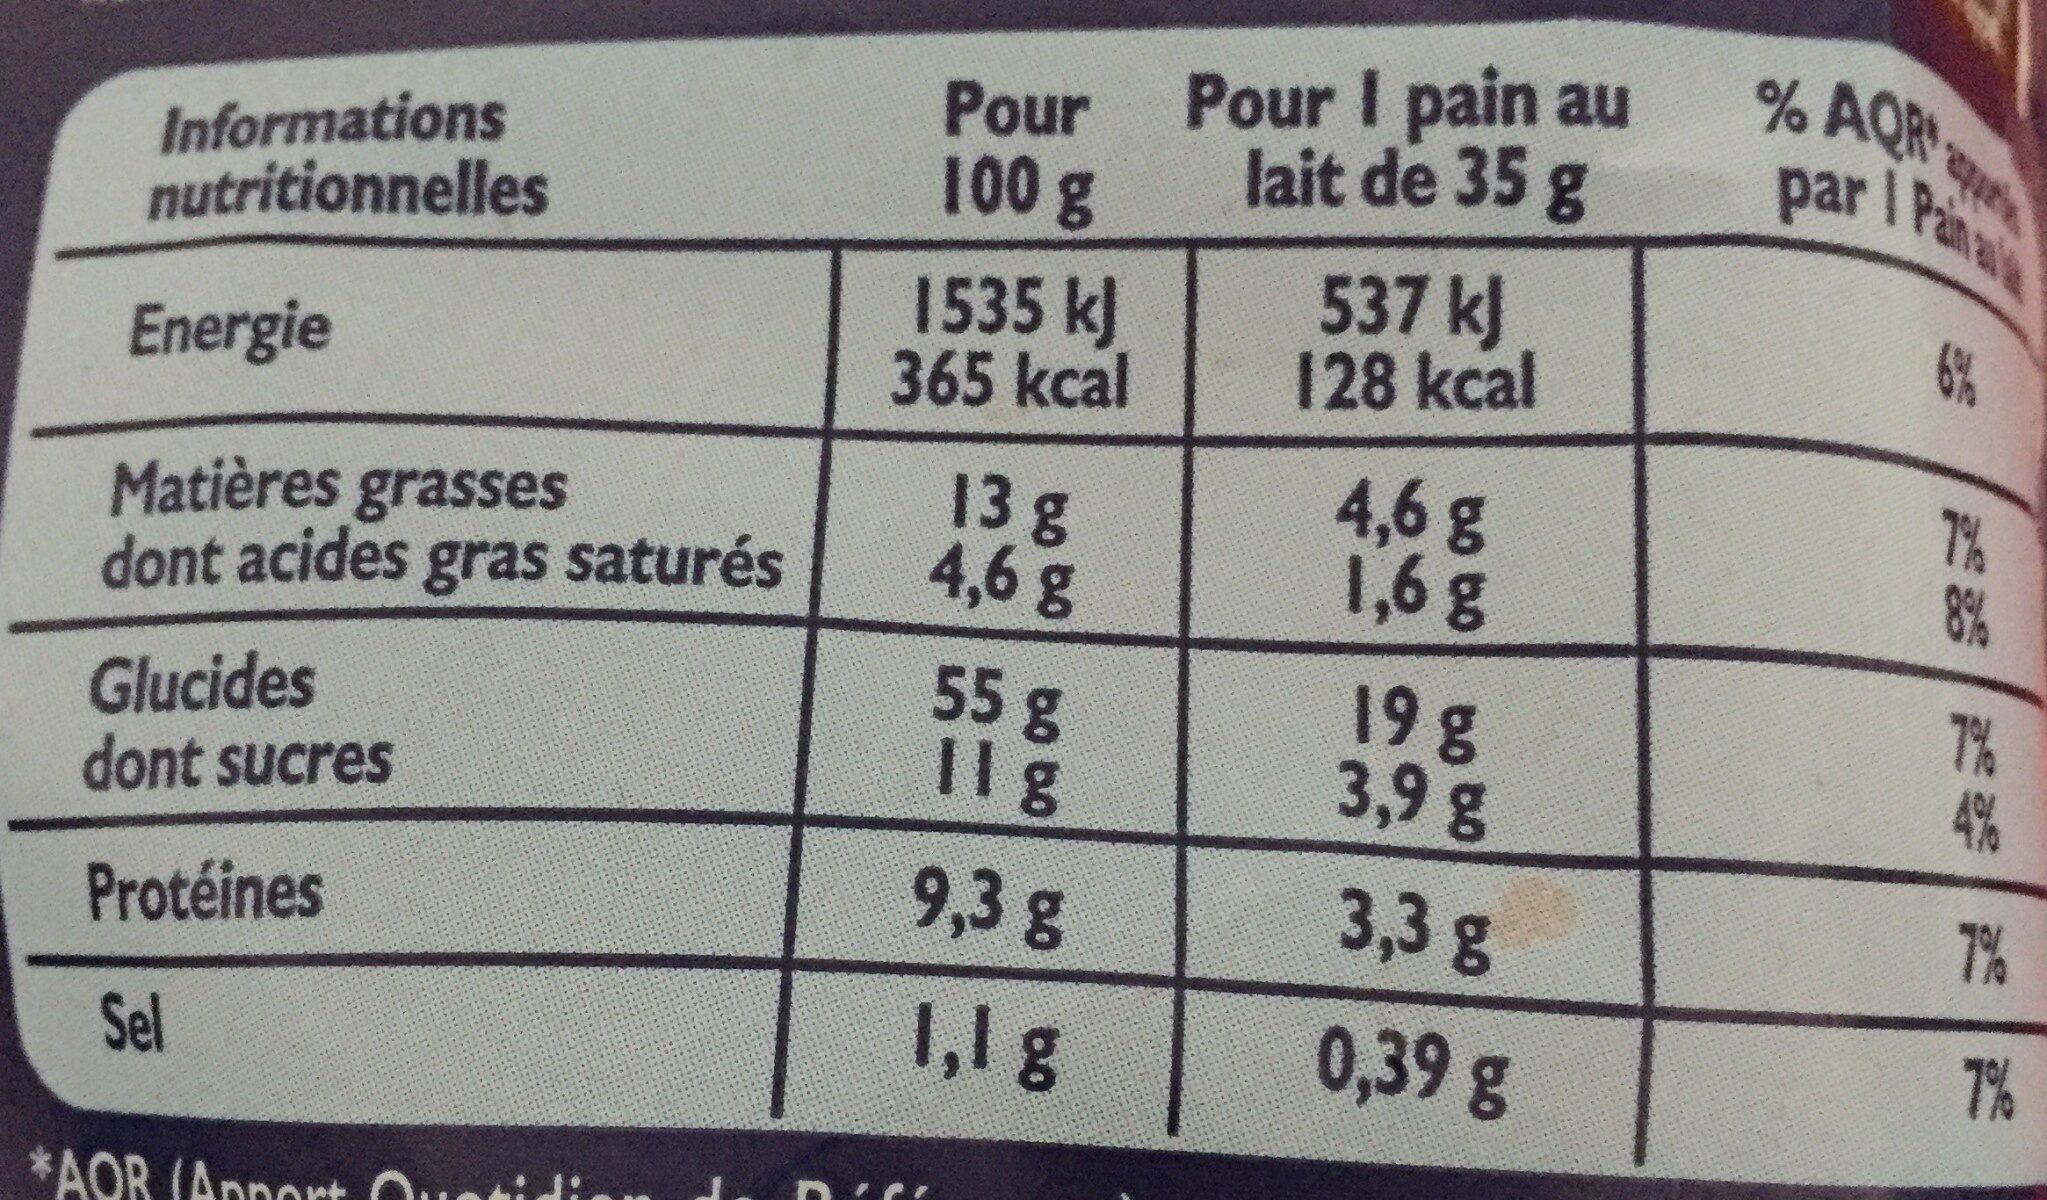 Pains au lait x 12 - Nutrition facts - fr